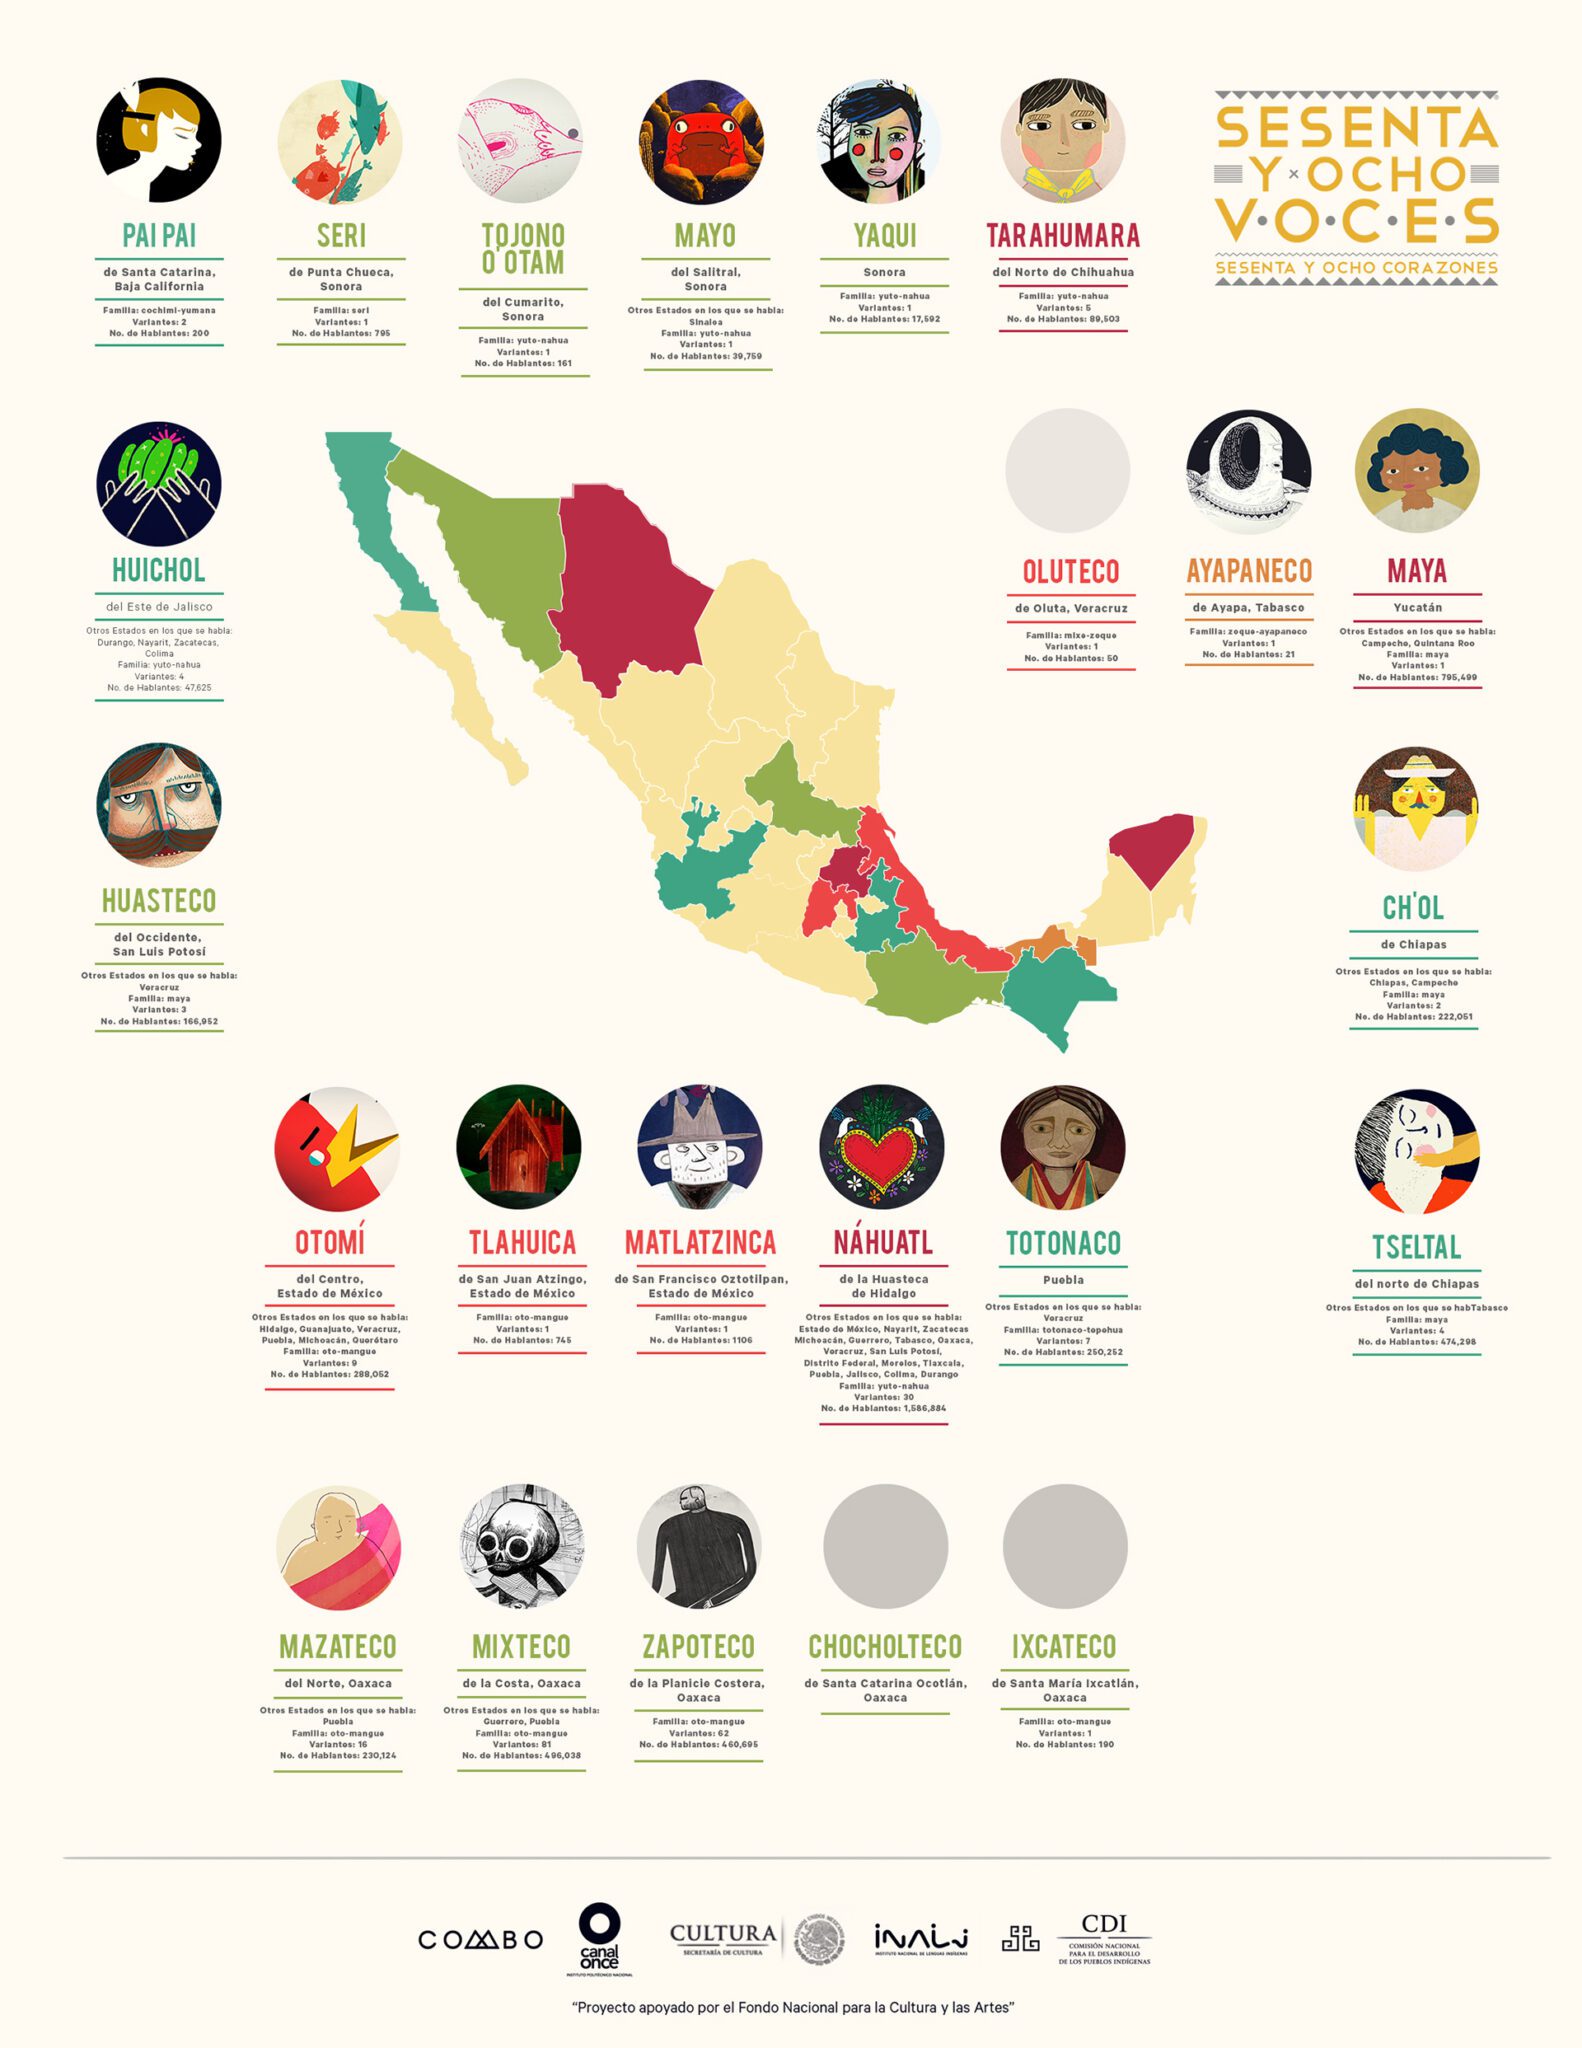 Las Lenguas Indígenas En México Tendrán El Mismo Valor Que El Español